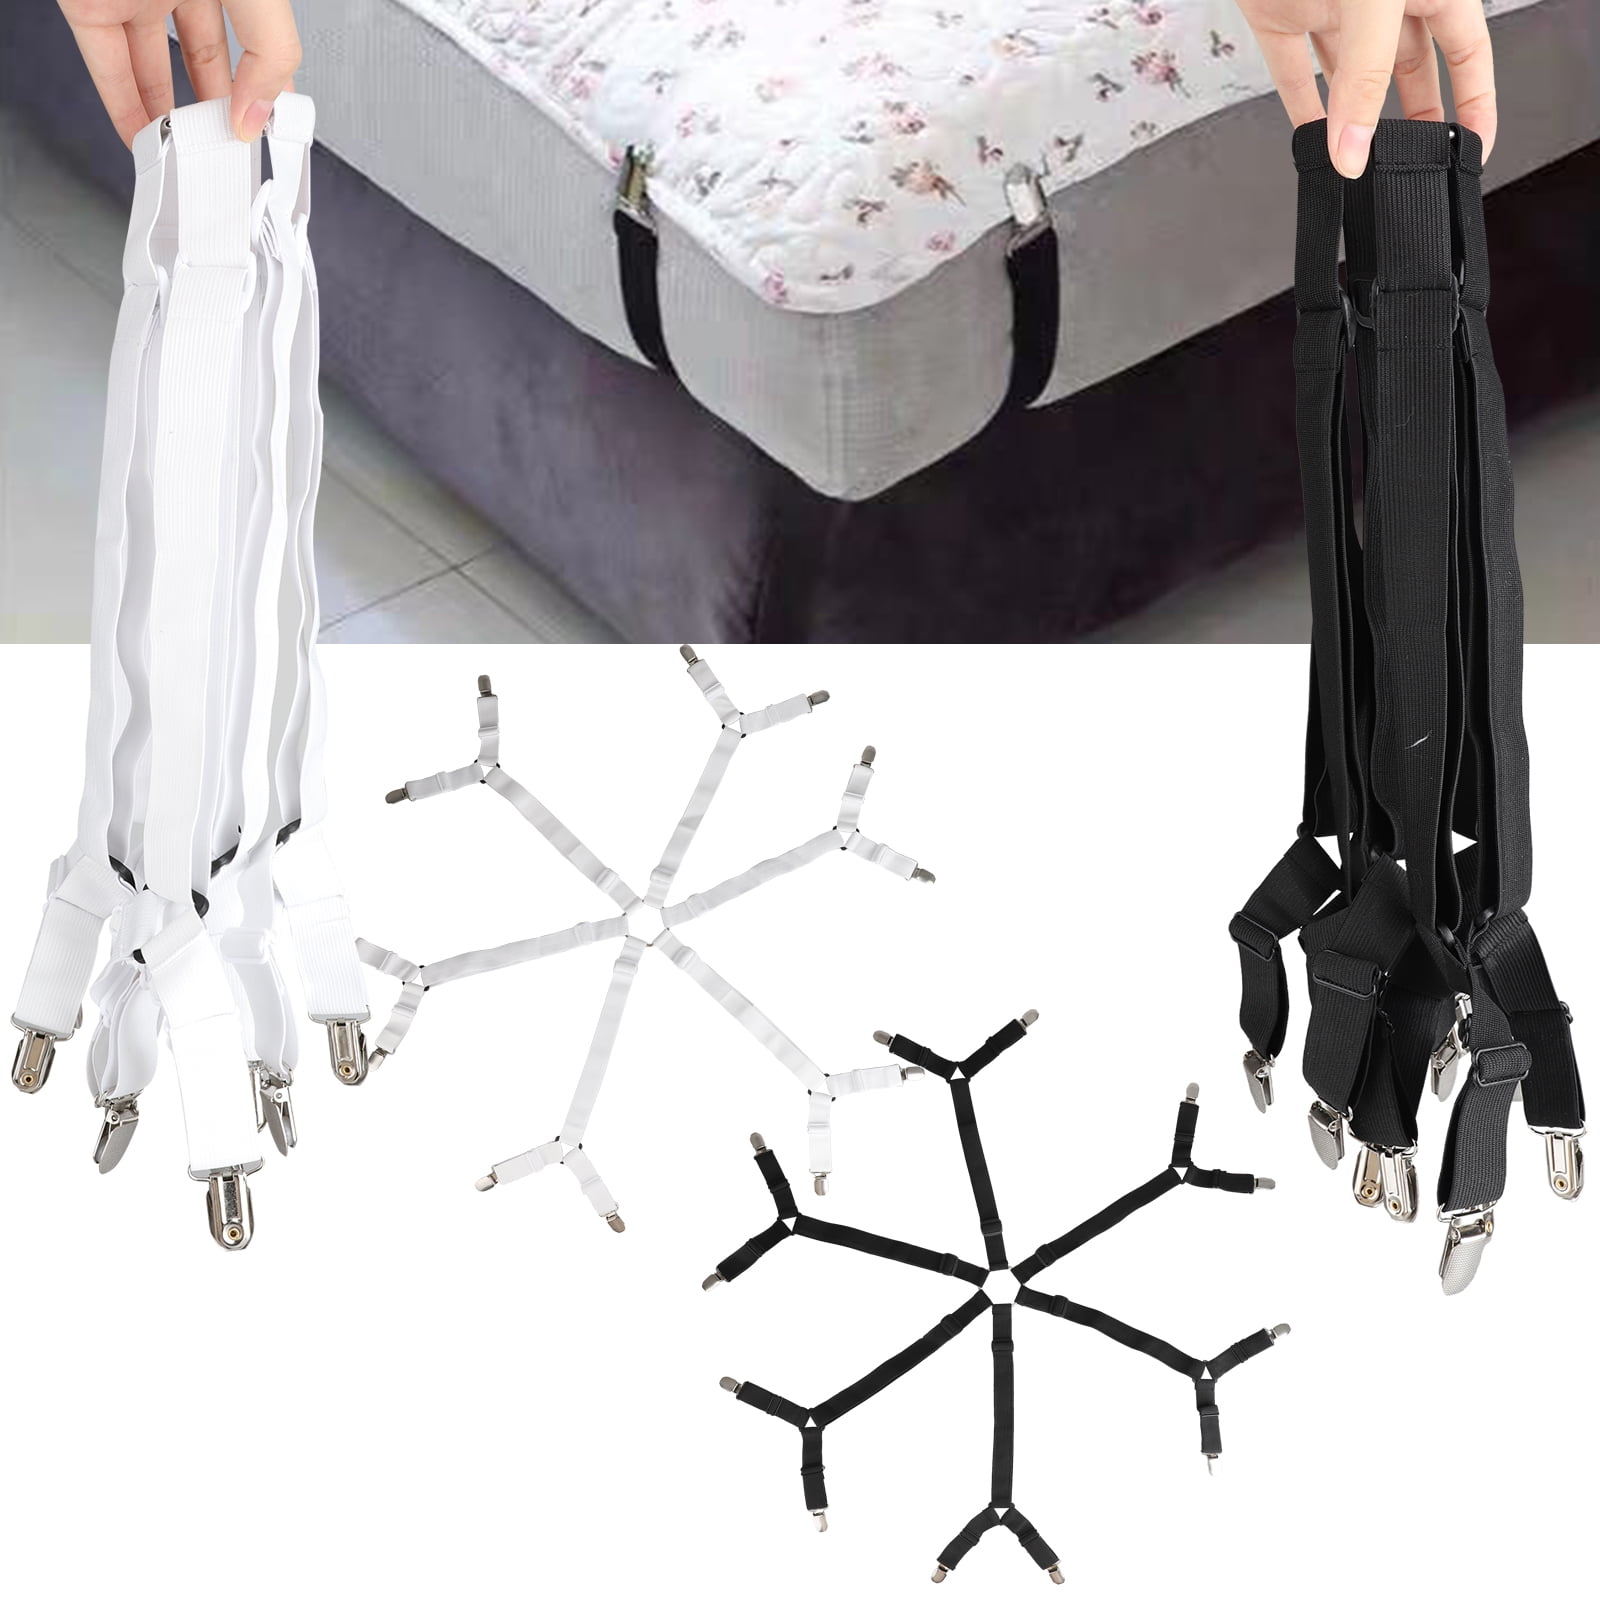 Ayniff 8 Packs Elastic Bed Sheet Straps Suspenders Adjustable Bed Corner Holder 